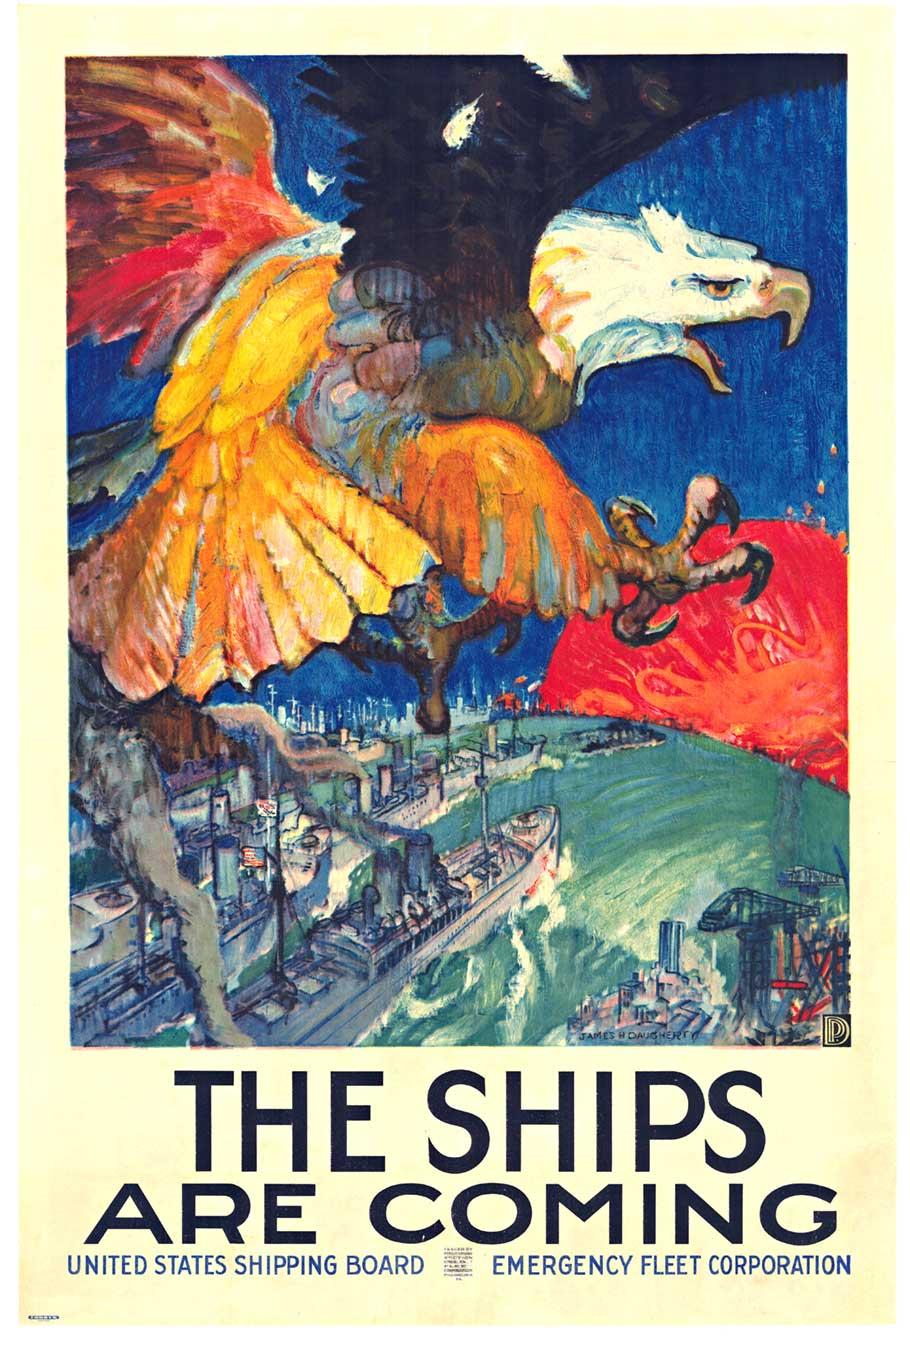 Original "The Ships Are Coming" vintage amerikanisches Plakat mit einem Adler.